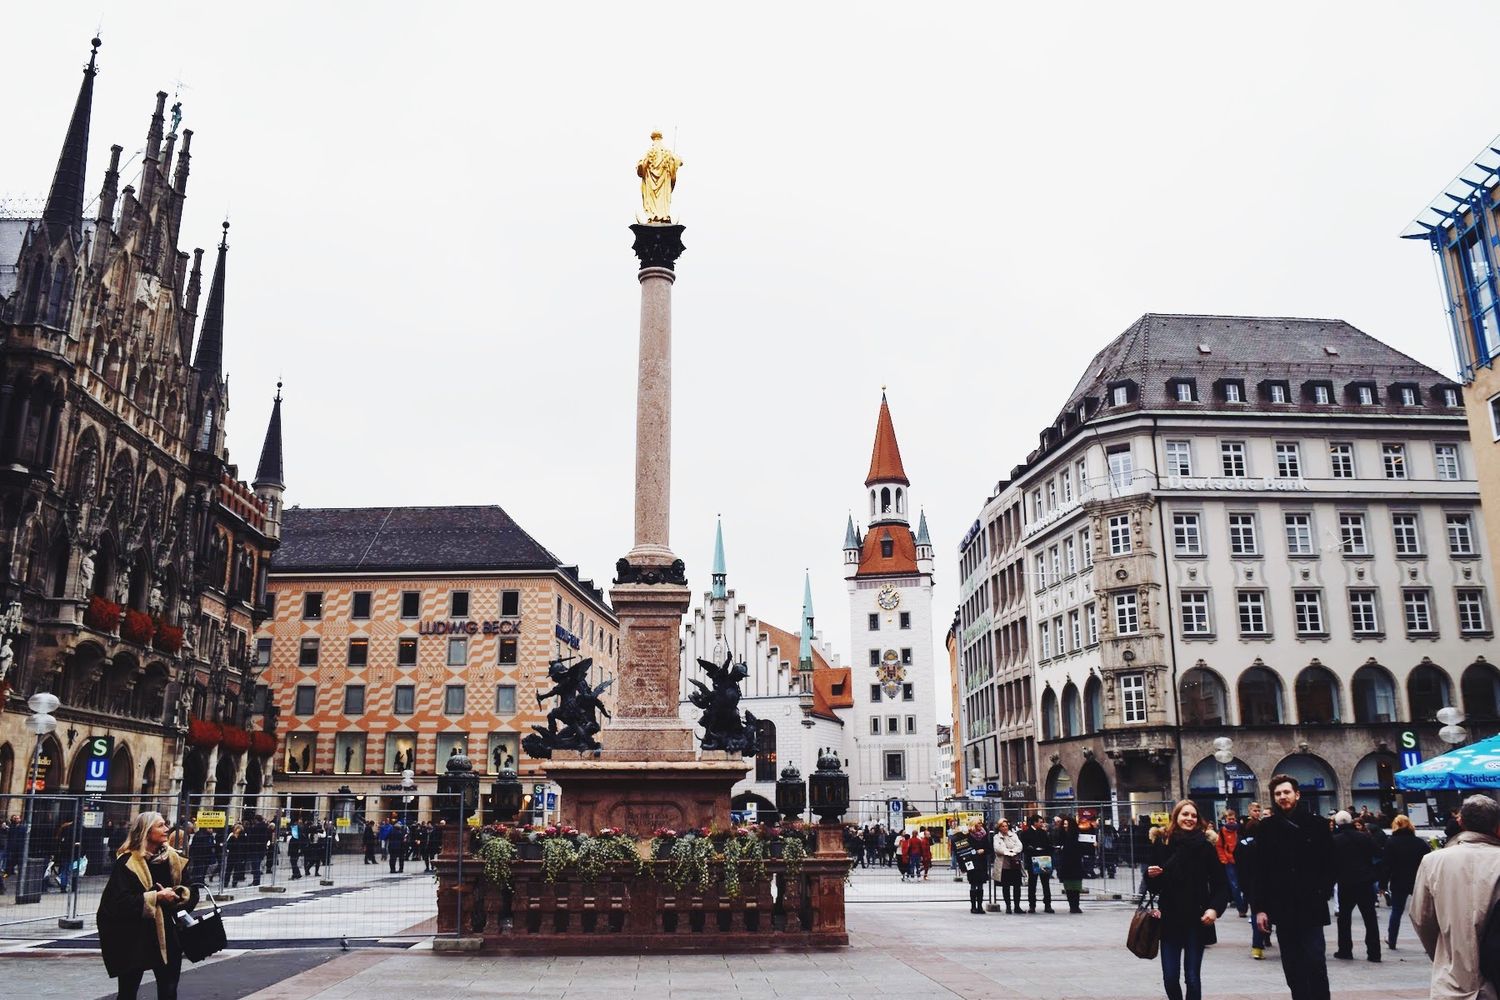 Altstadt: Munich’s “Old Town” Neighborhood